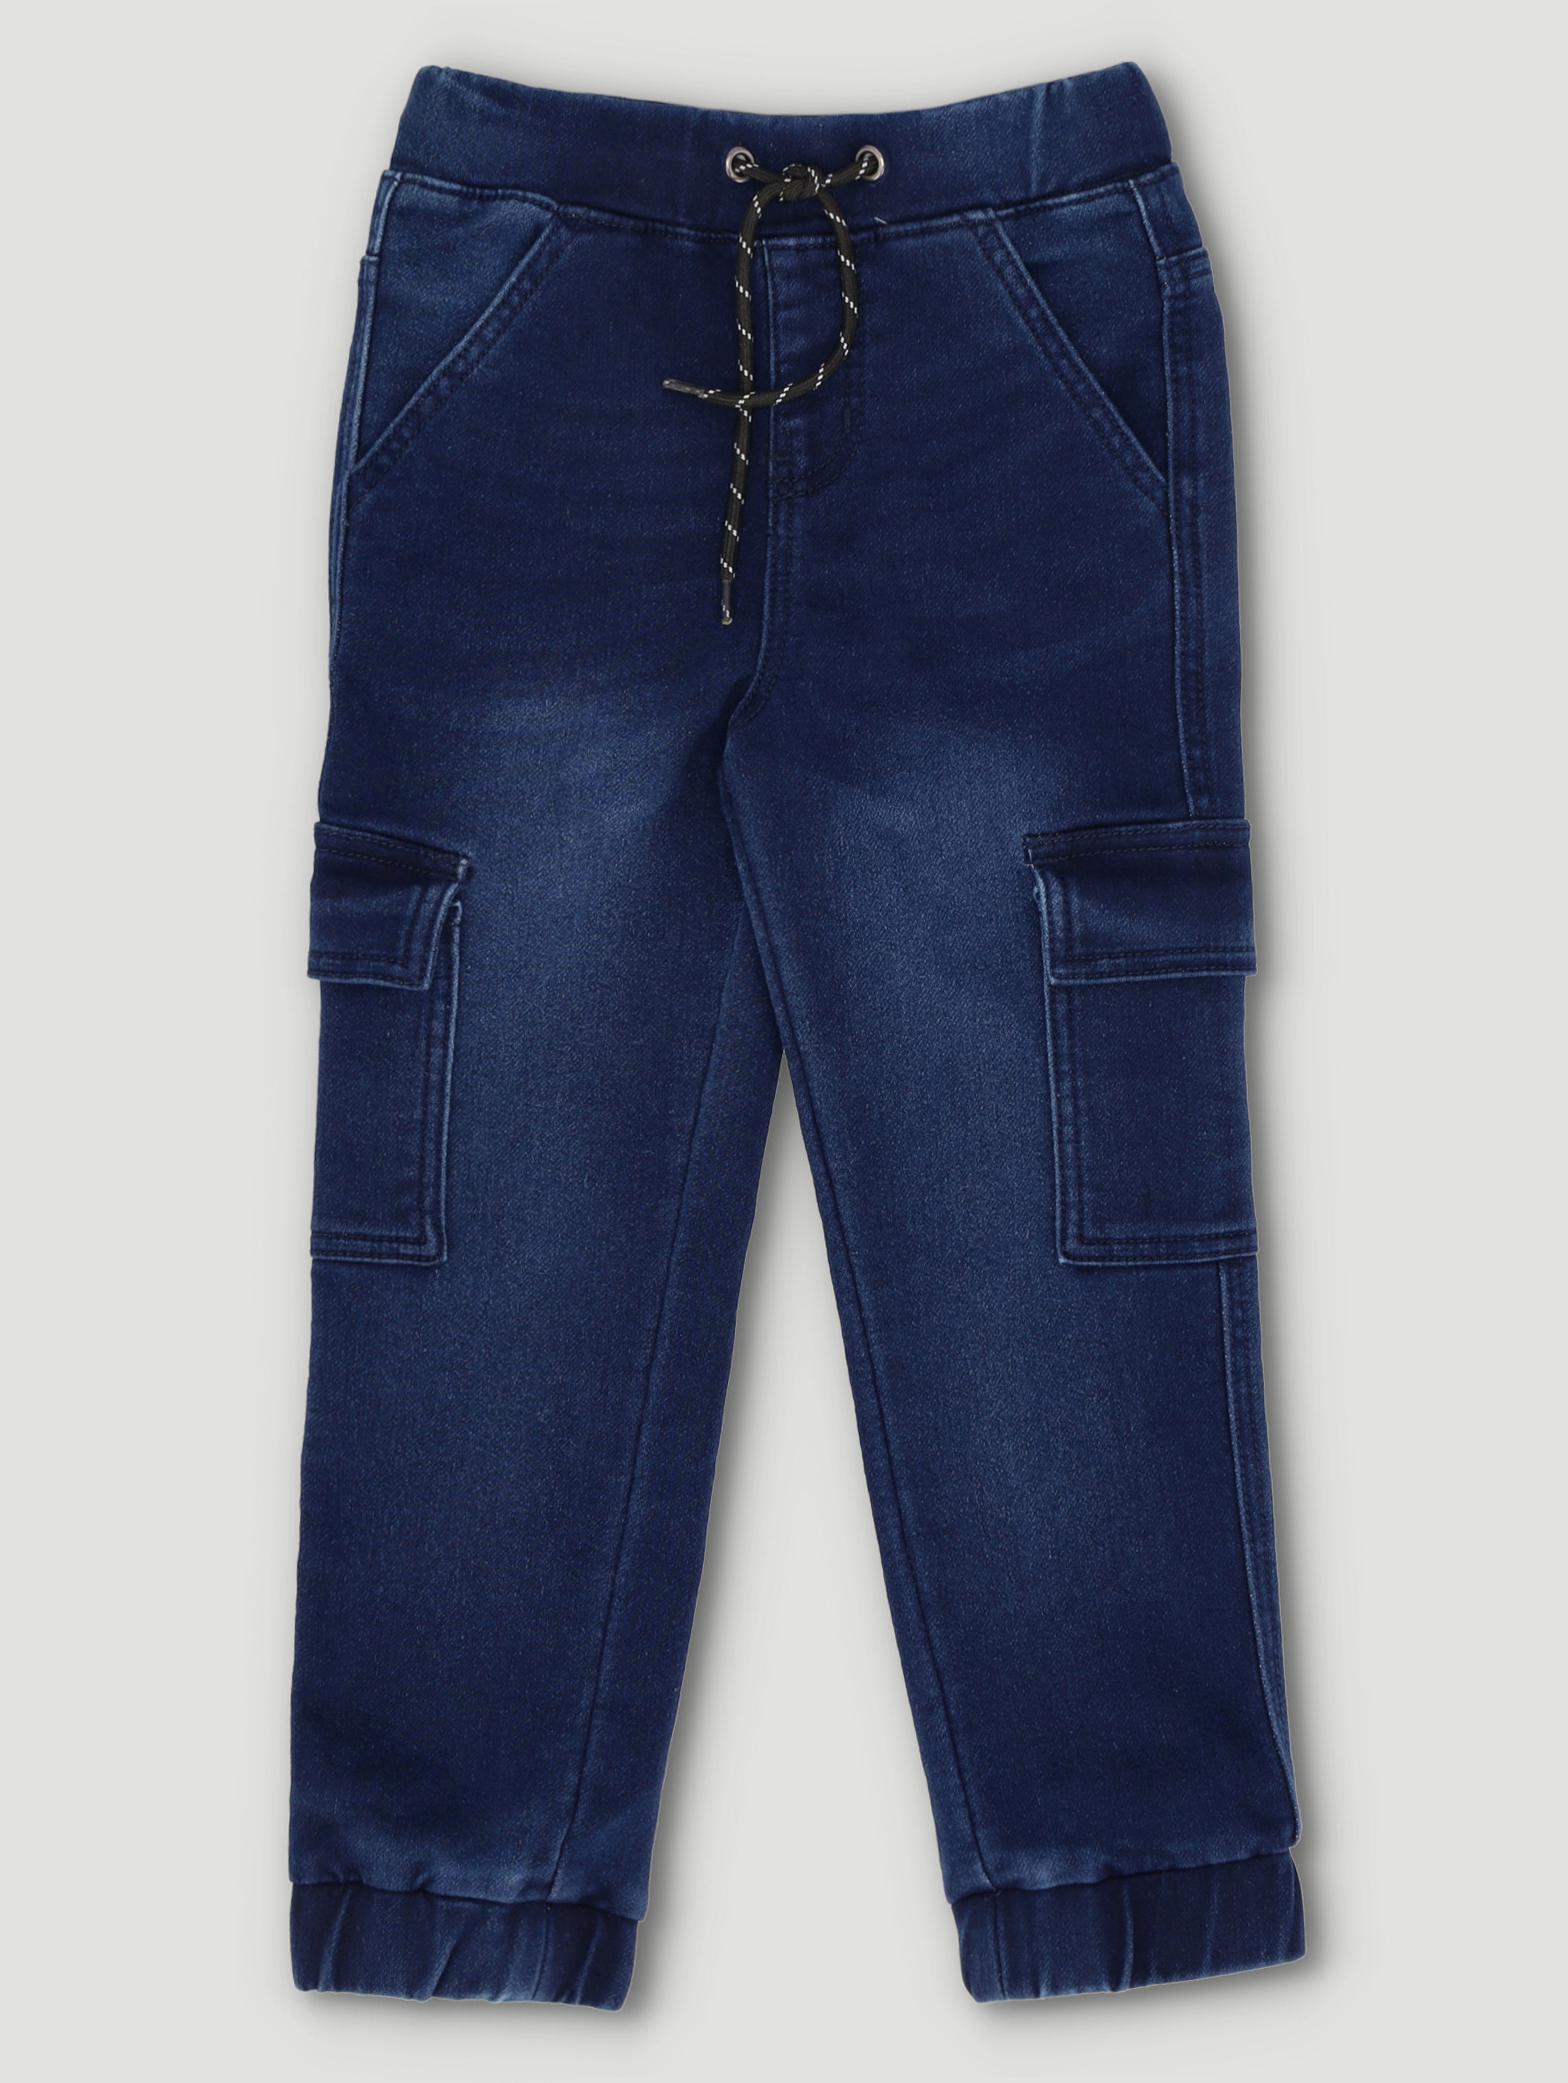 Pre-Boys Fashion Cargo Denim Knit Jogger - Dark Blue